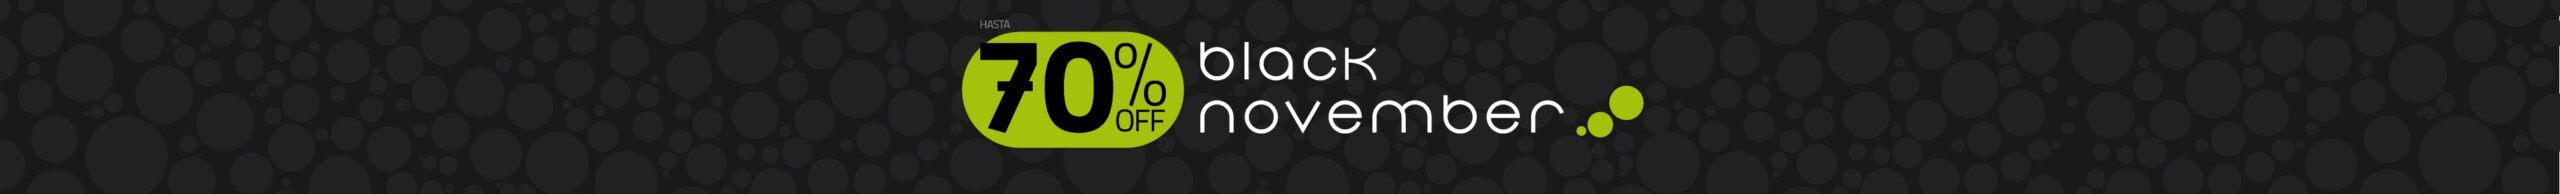 black friday november days offer oferta dia semana saldos sales outdoor ecuador quito